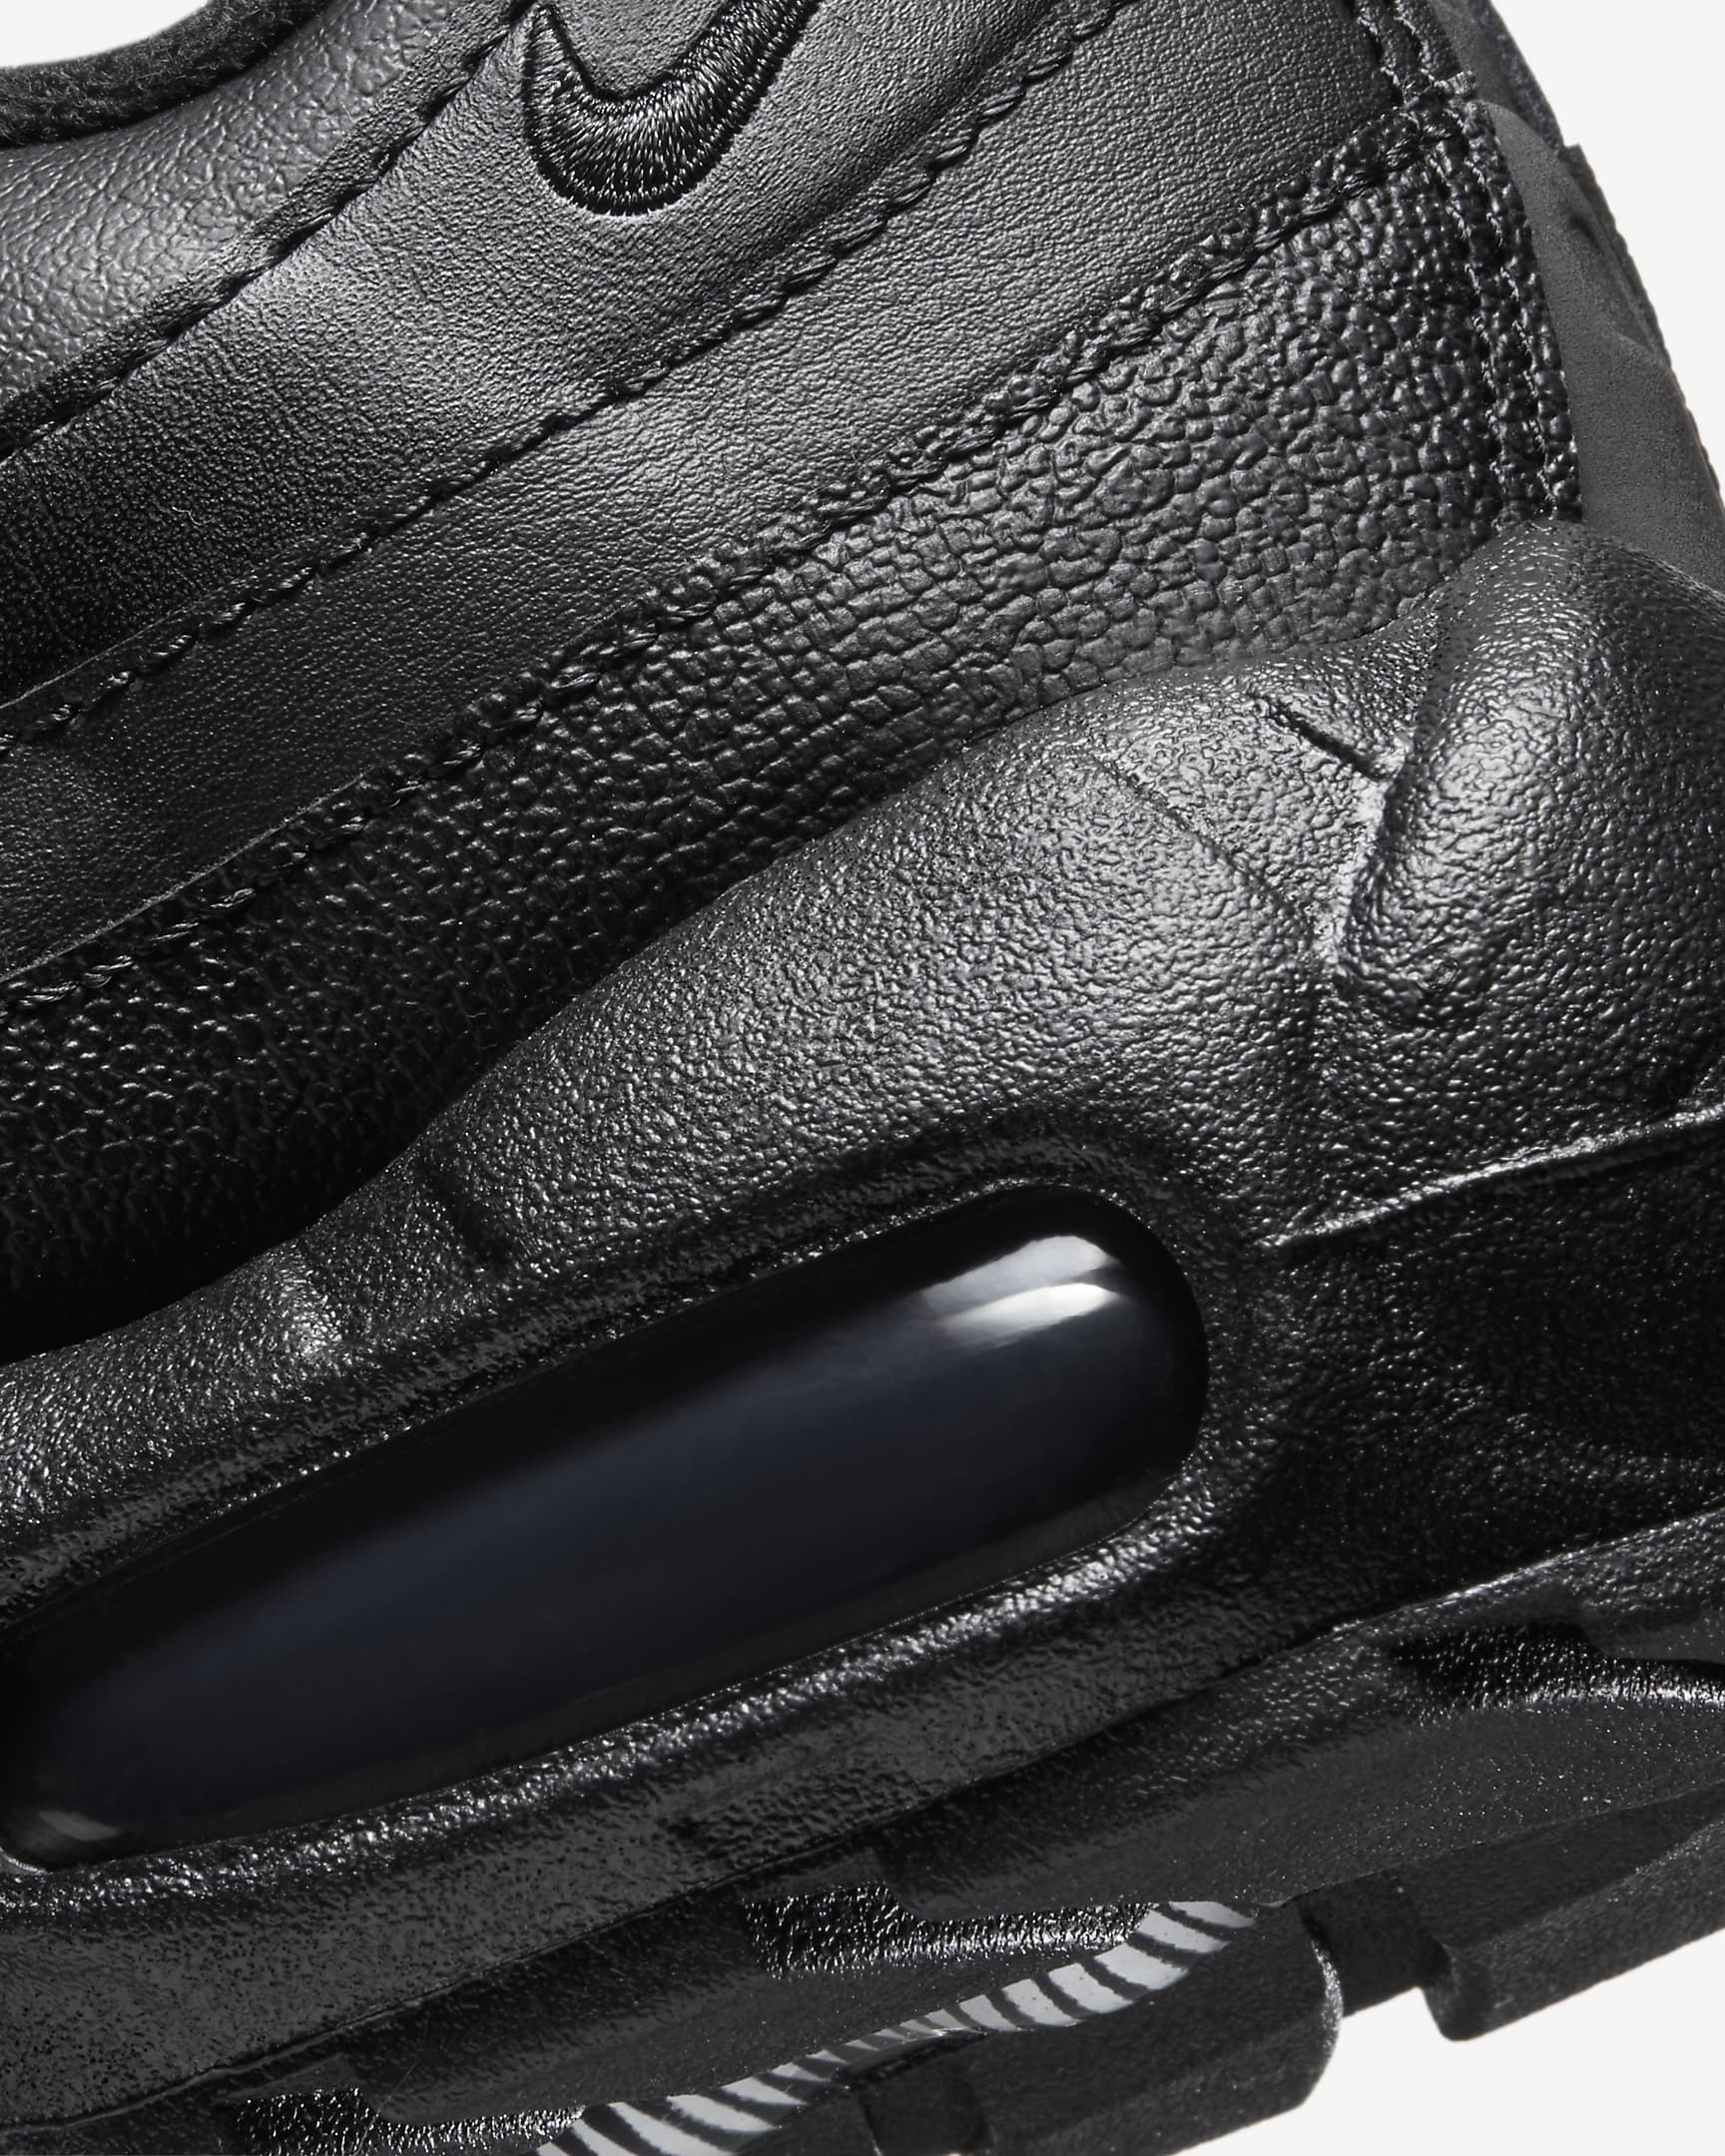 Chaussure Nike Air Max 95 Recraft pour ado - Noir/Noir/Blanc/Noir